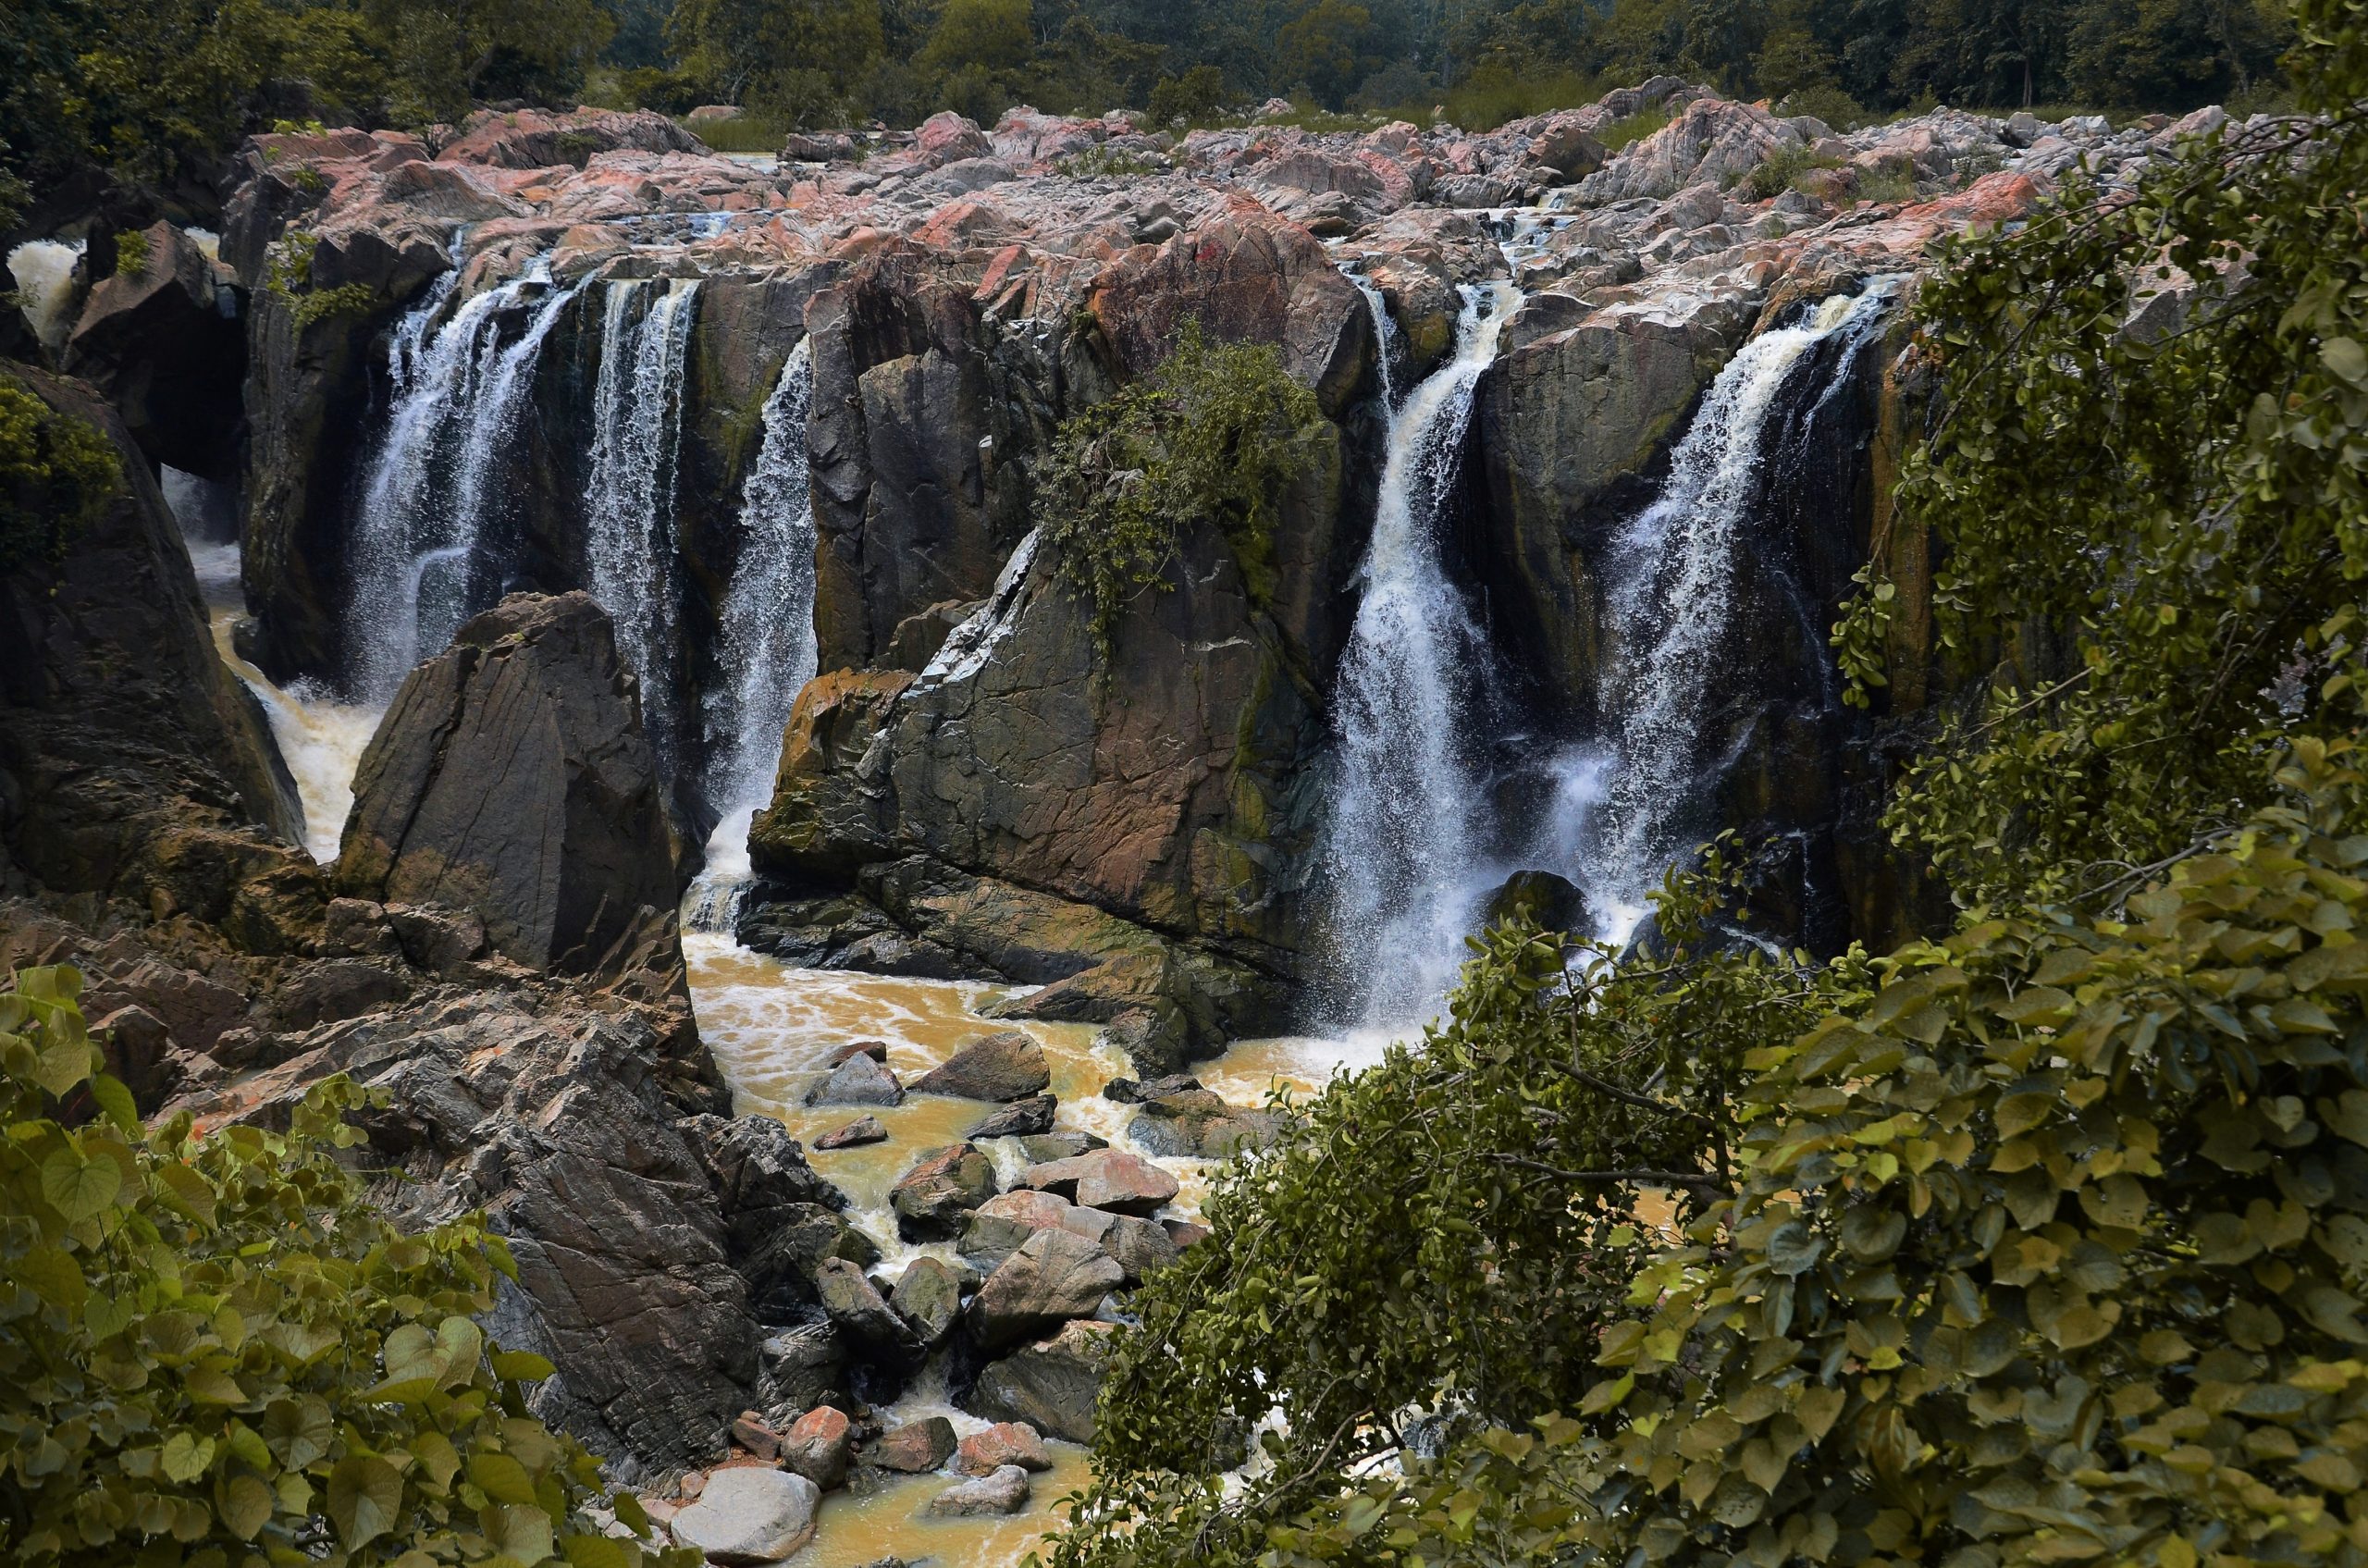 A waterfall at Keonjhar district of Odisha